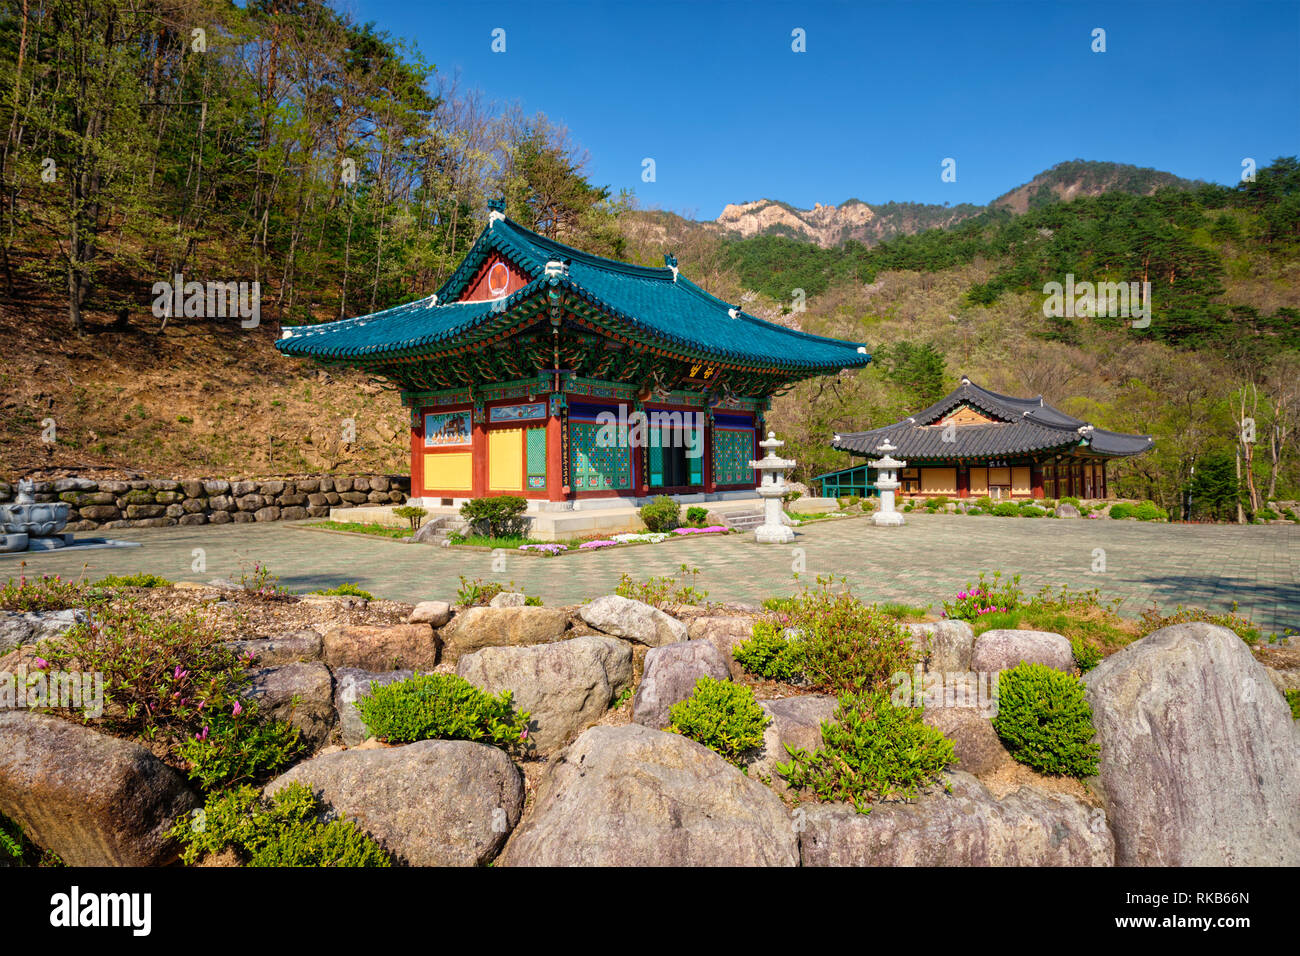 Sinheungsa temple in Seoraksan National Park, Soraksan, South Korea Stock Photo